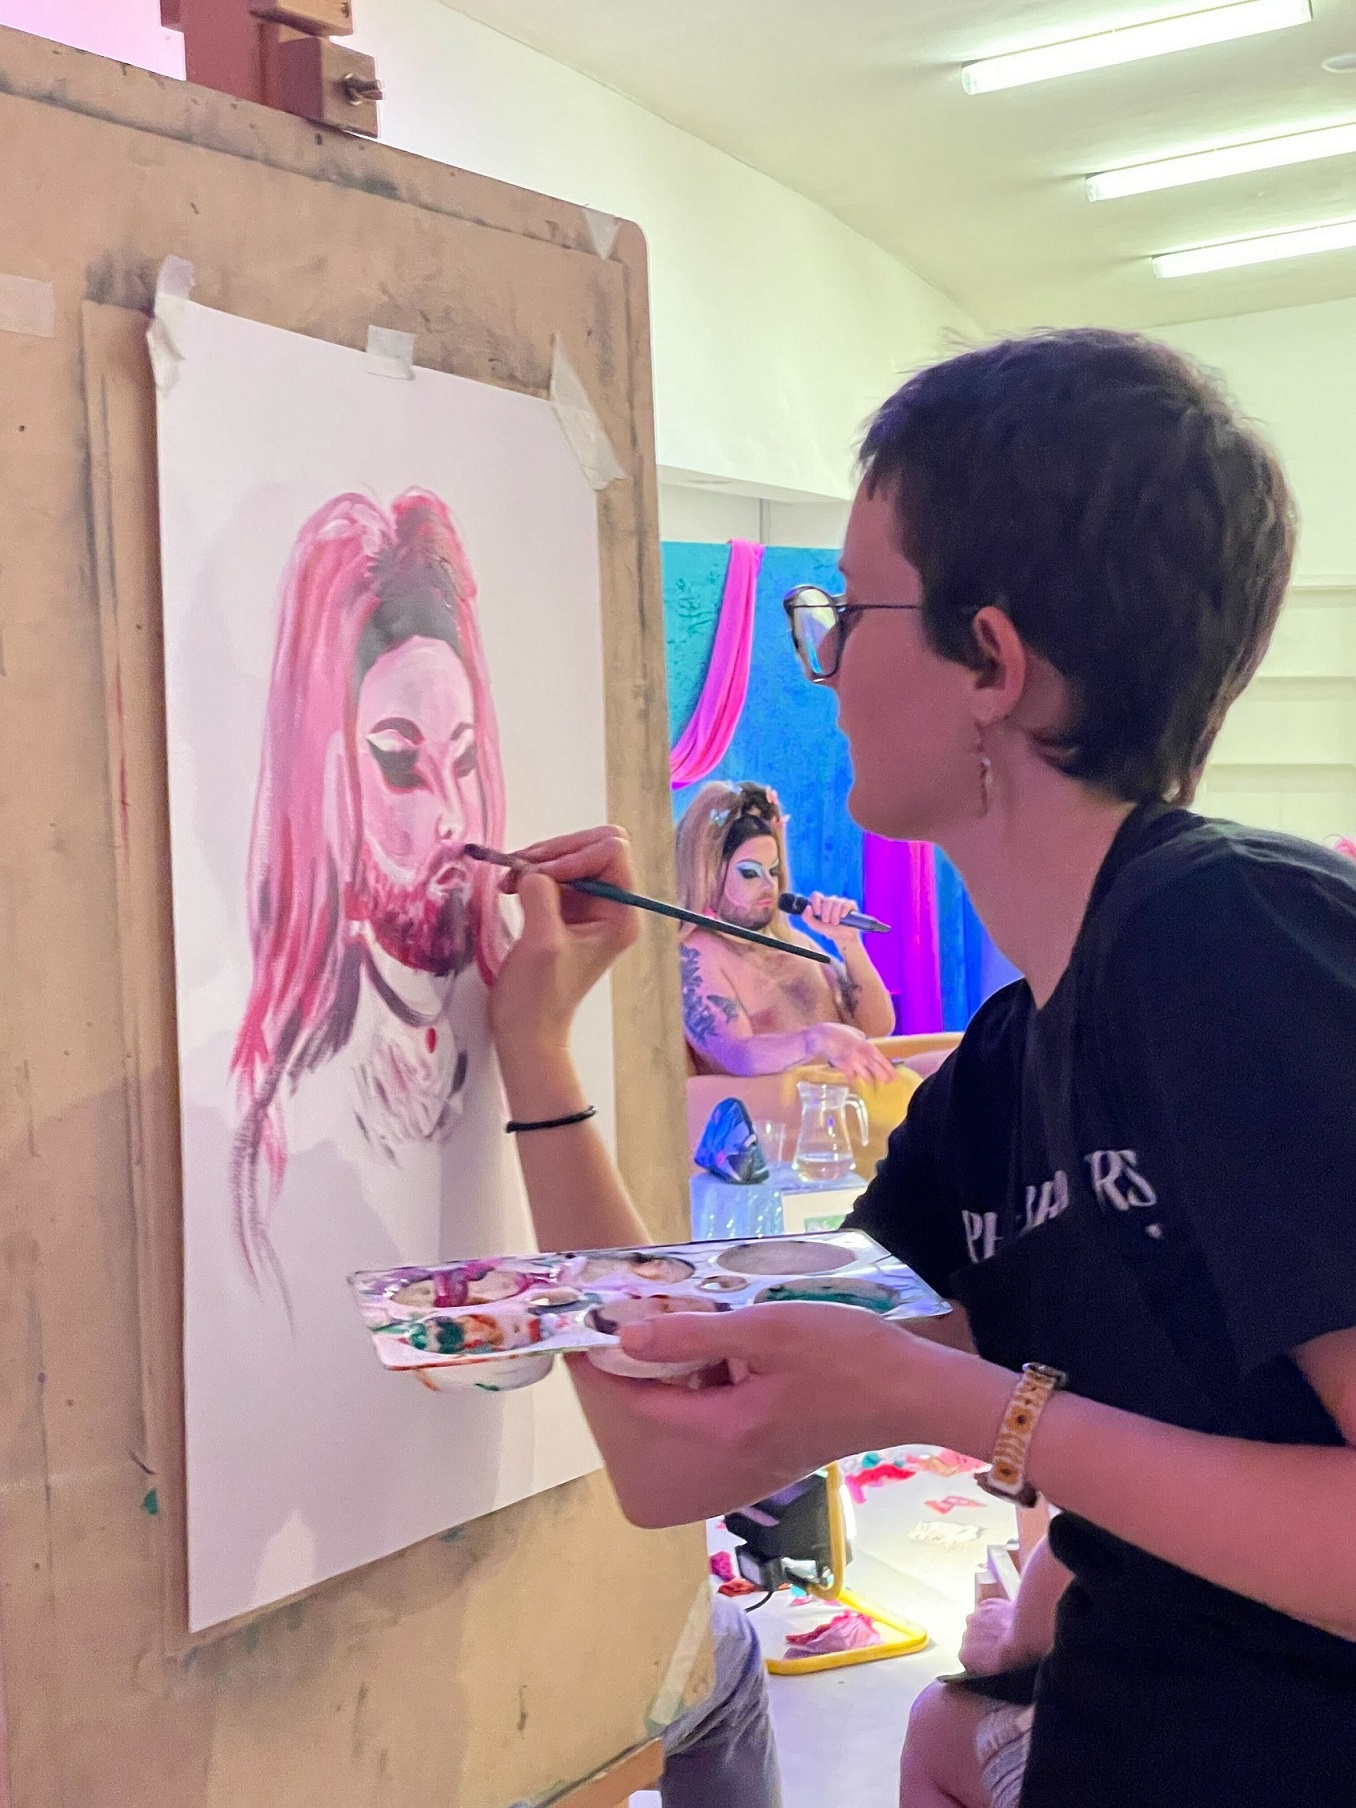 A person at Drag Life Drawing paints Sirena Hart